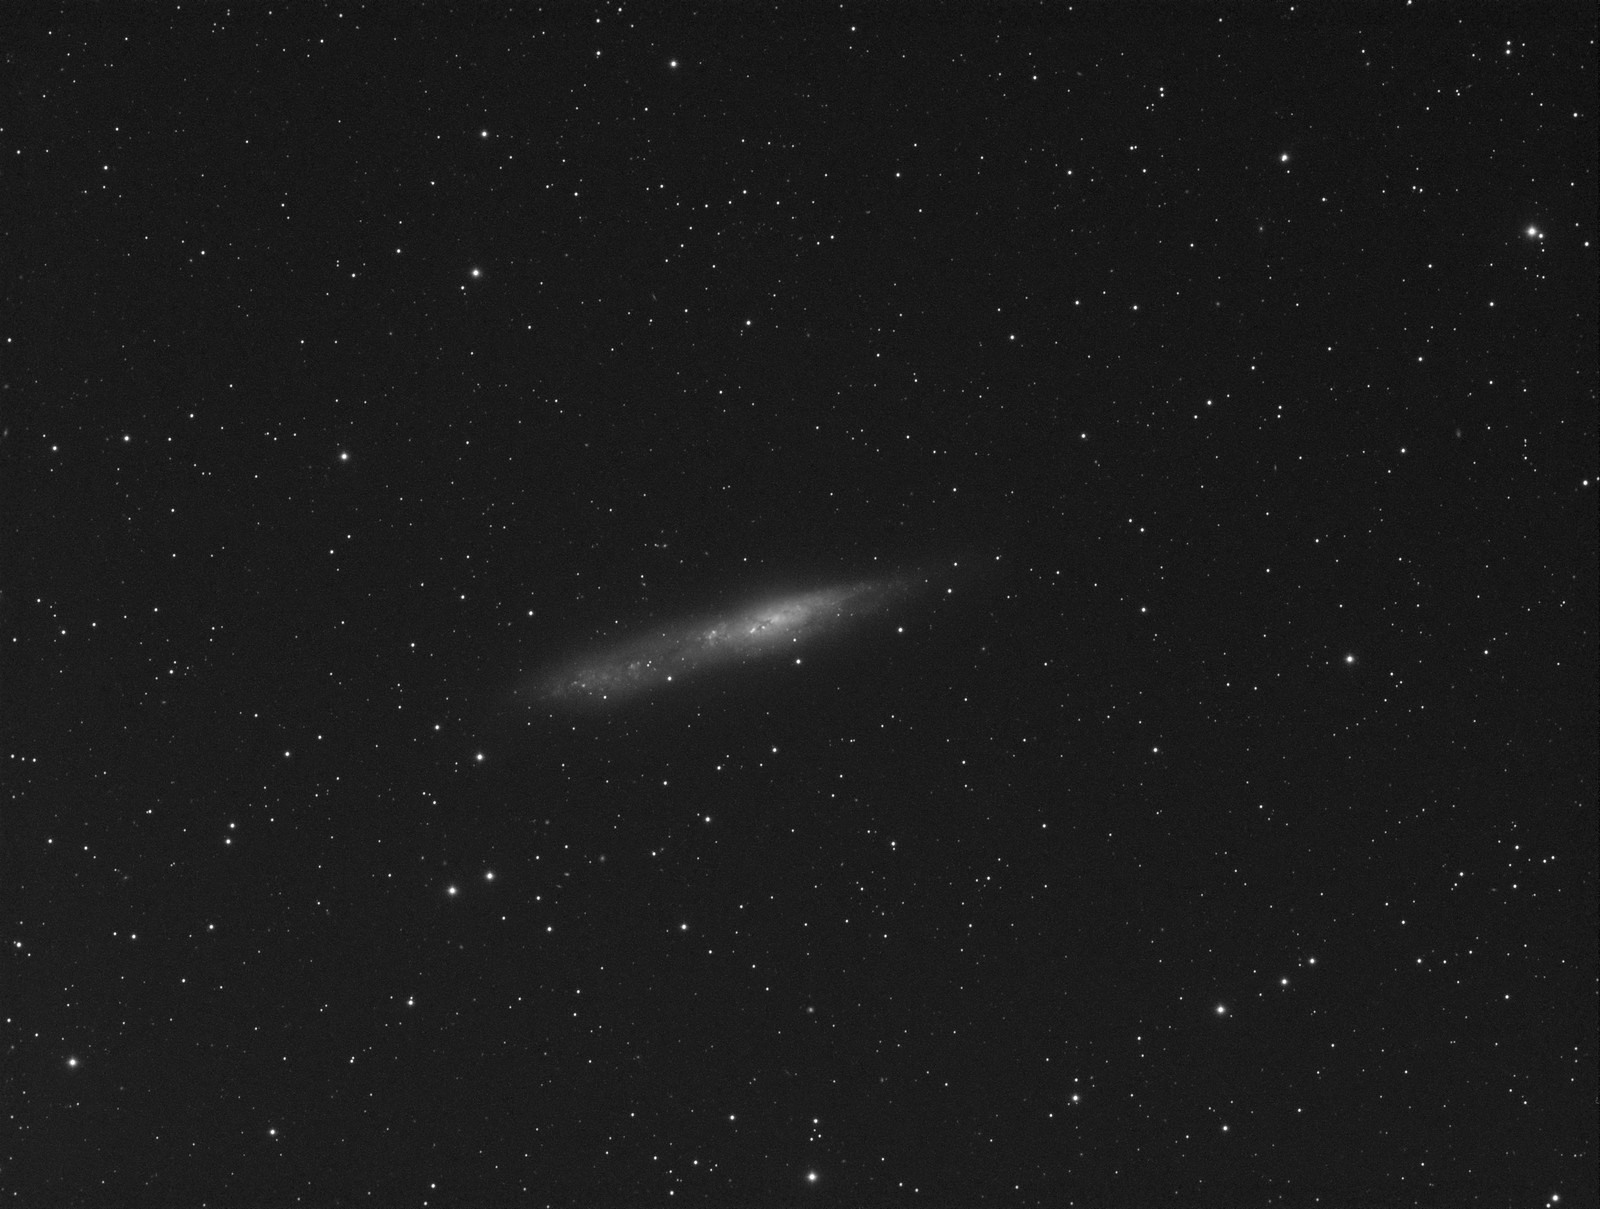 072 - NGC 55 - Luminance